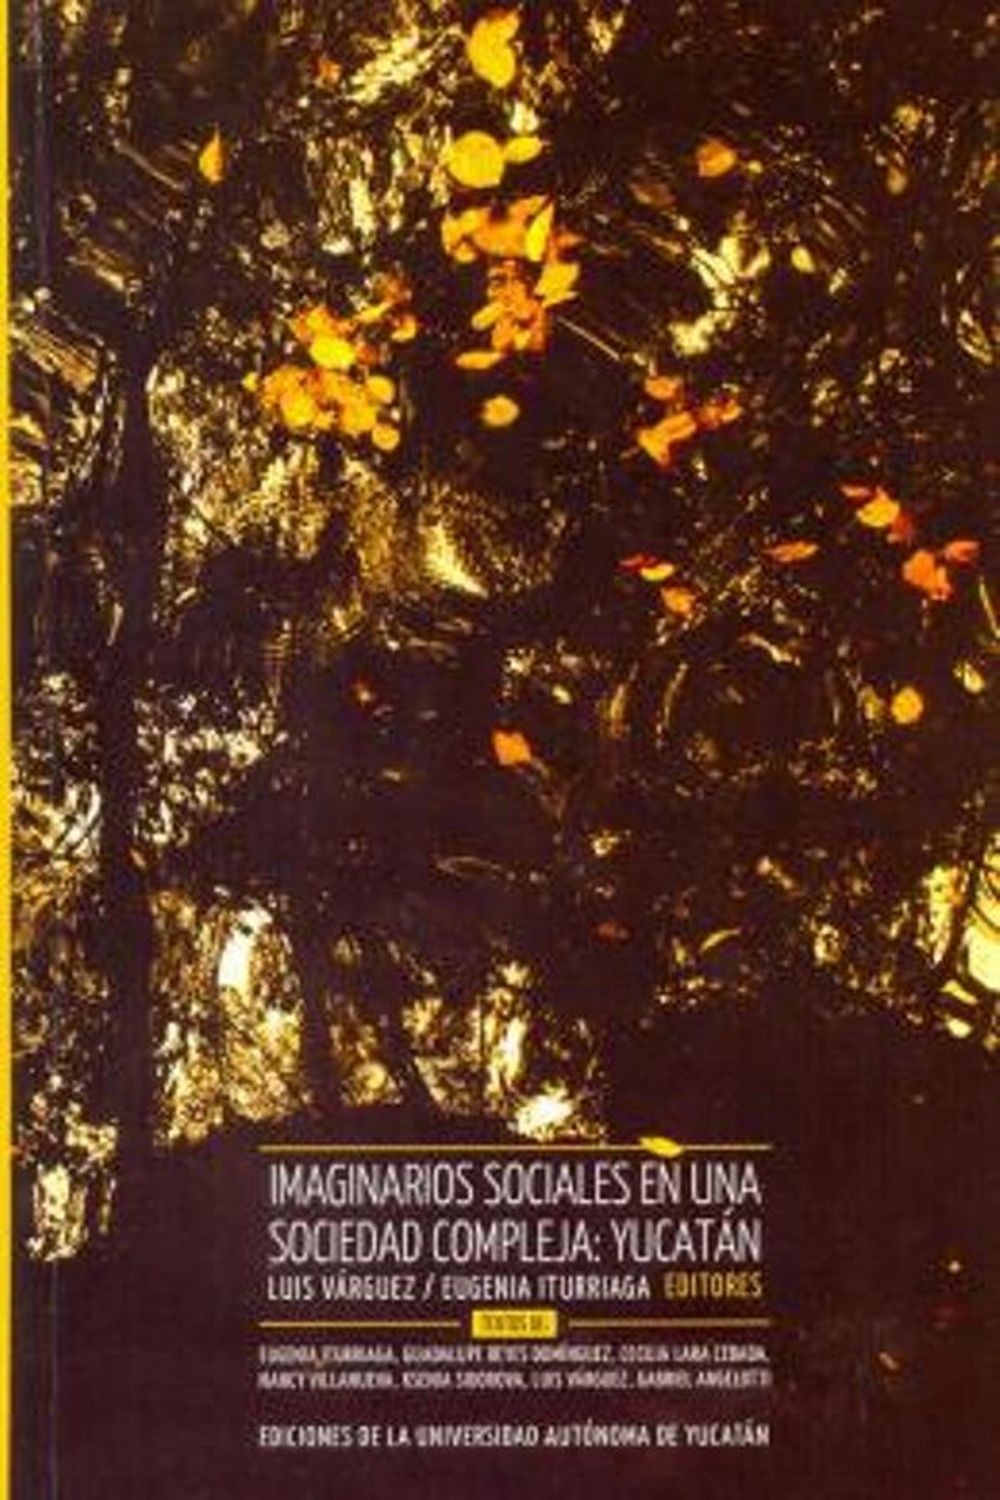 bm-imaginarios-sociales-en-una-sociedad-compleja-yucatan-universidad-autonoma-de-yucatan-uady-9786078191772